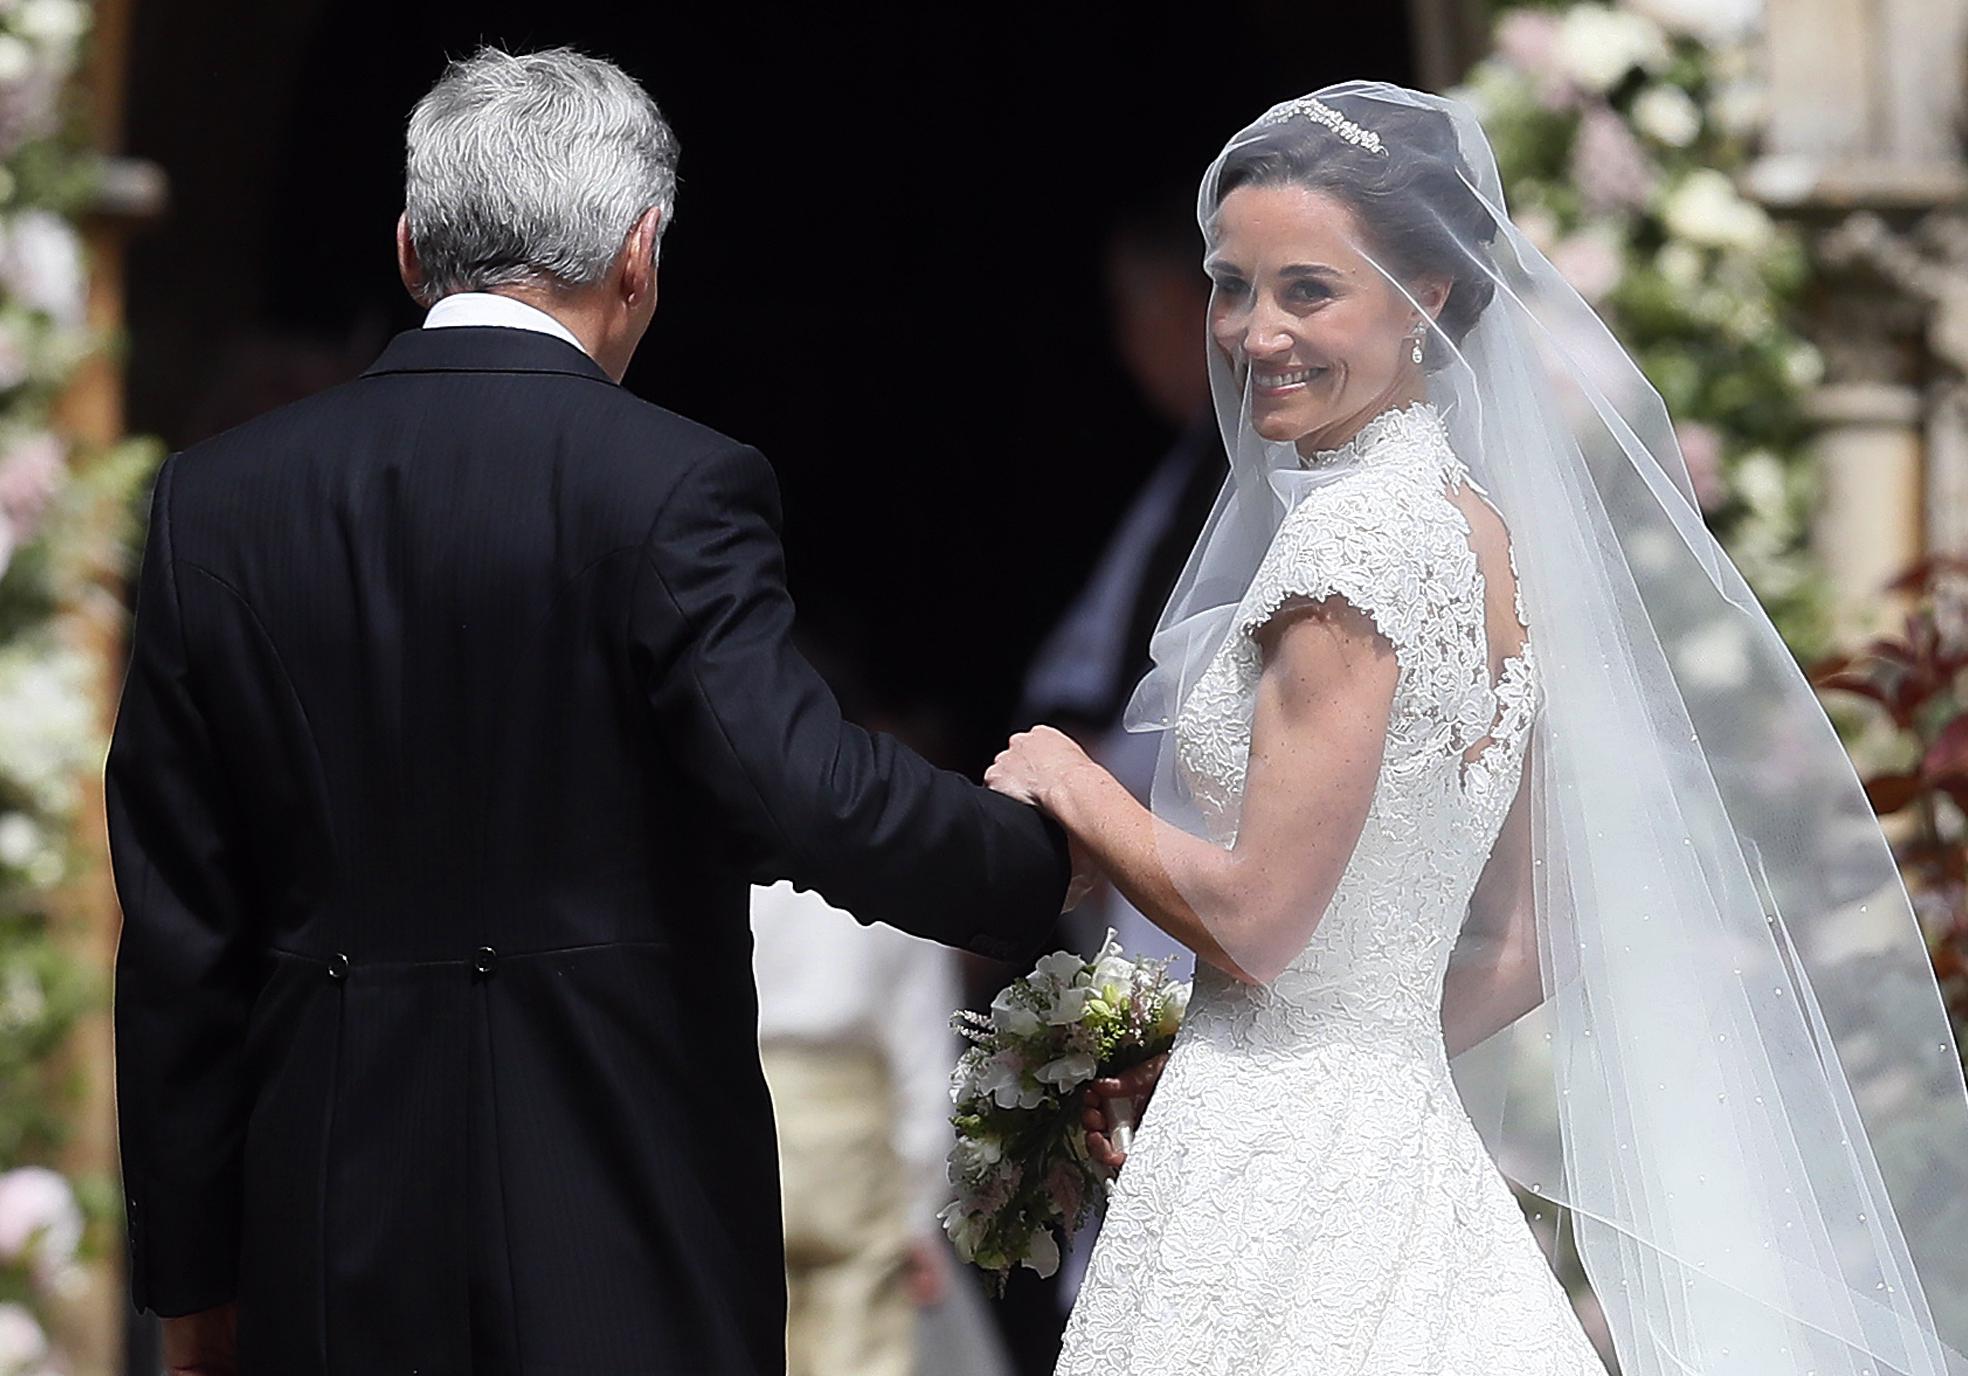 Mariage de Pippa Middleton George et Charlotte Harry toutes les 